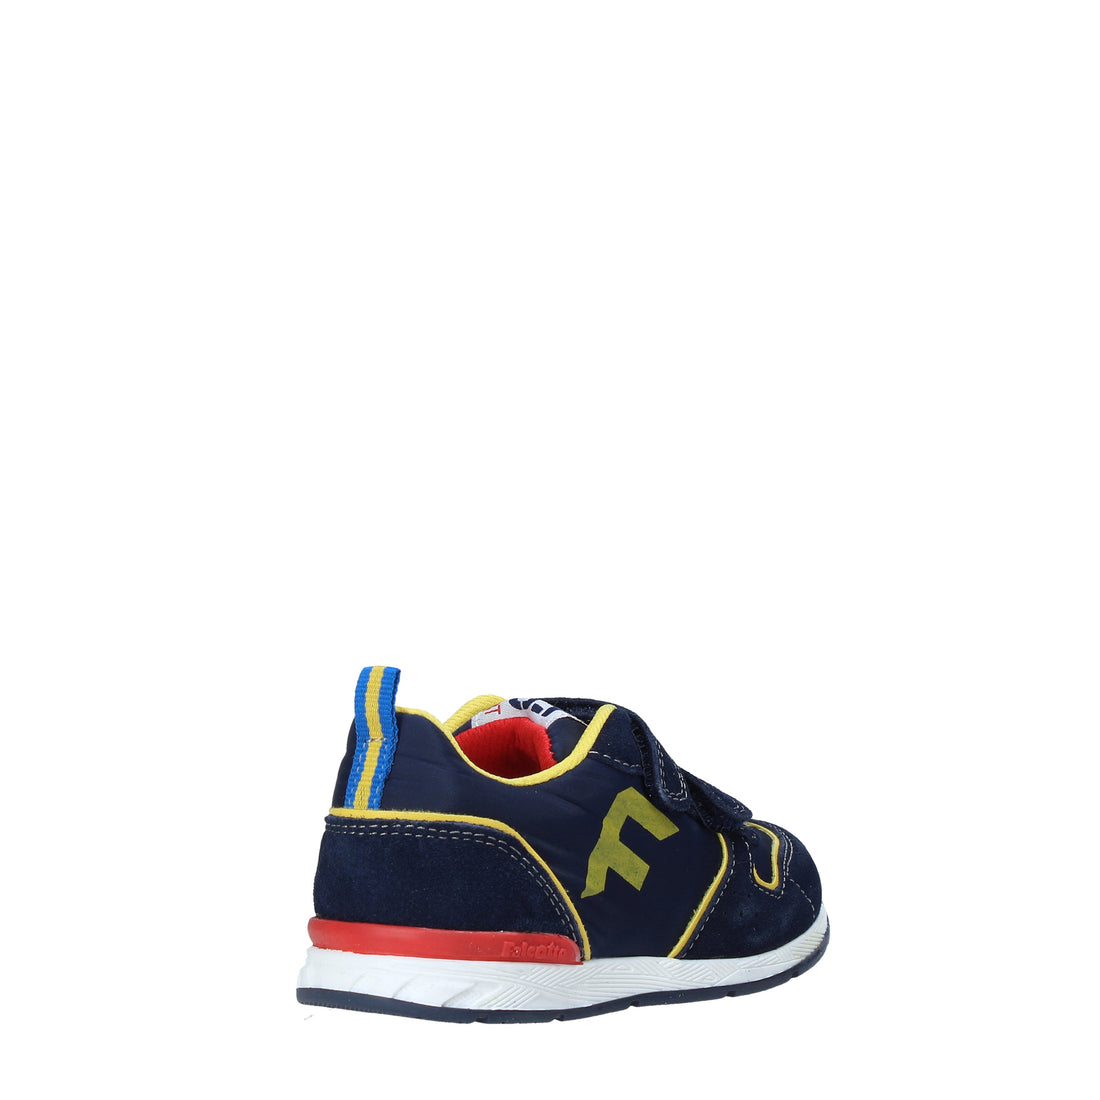 Sneakers Blu Navy Giallo Falcotto